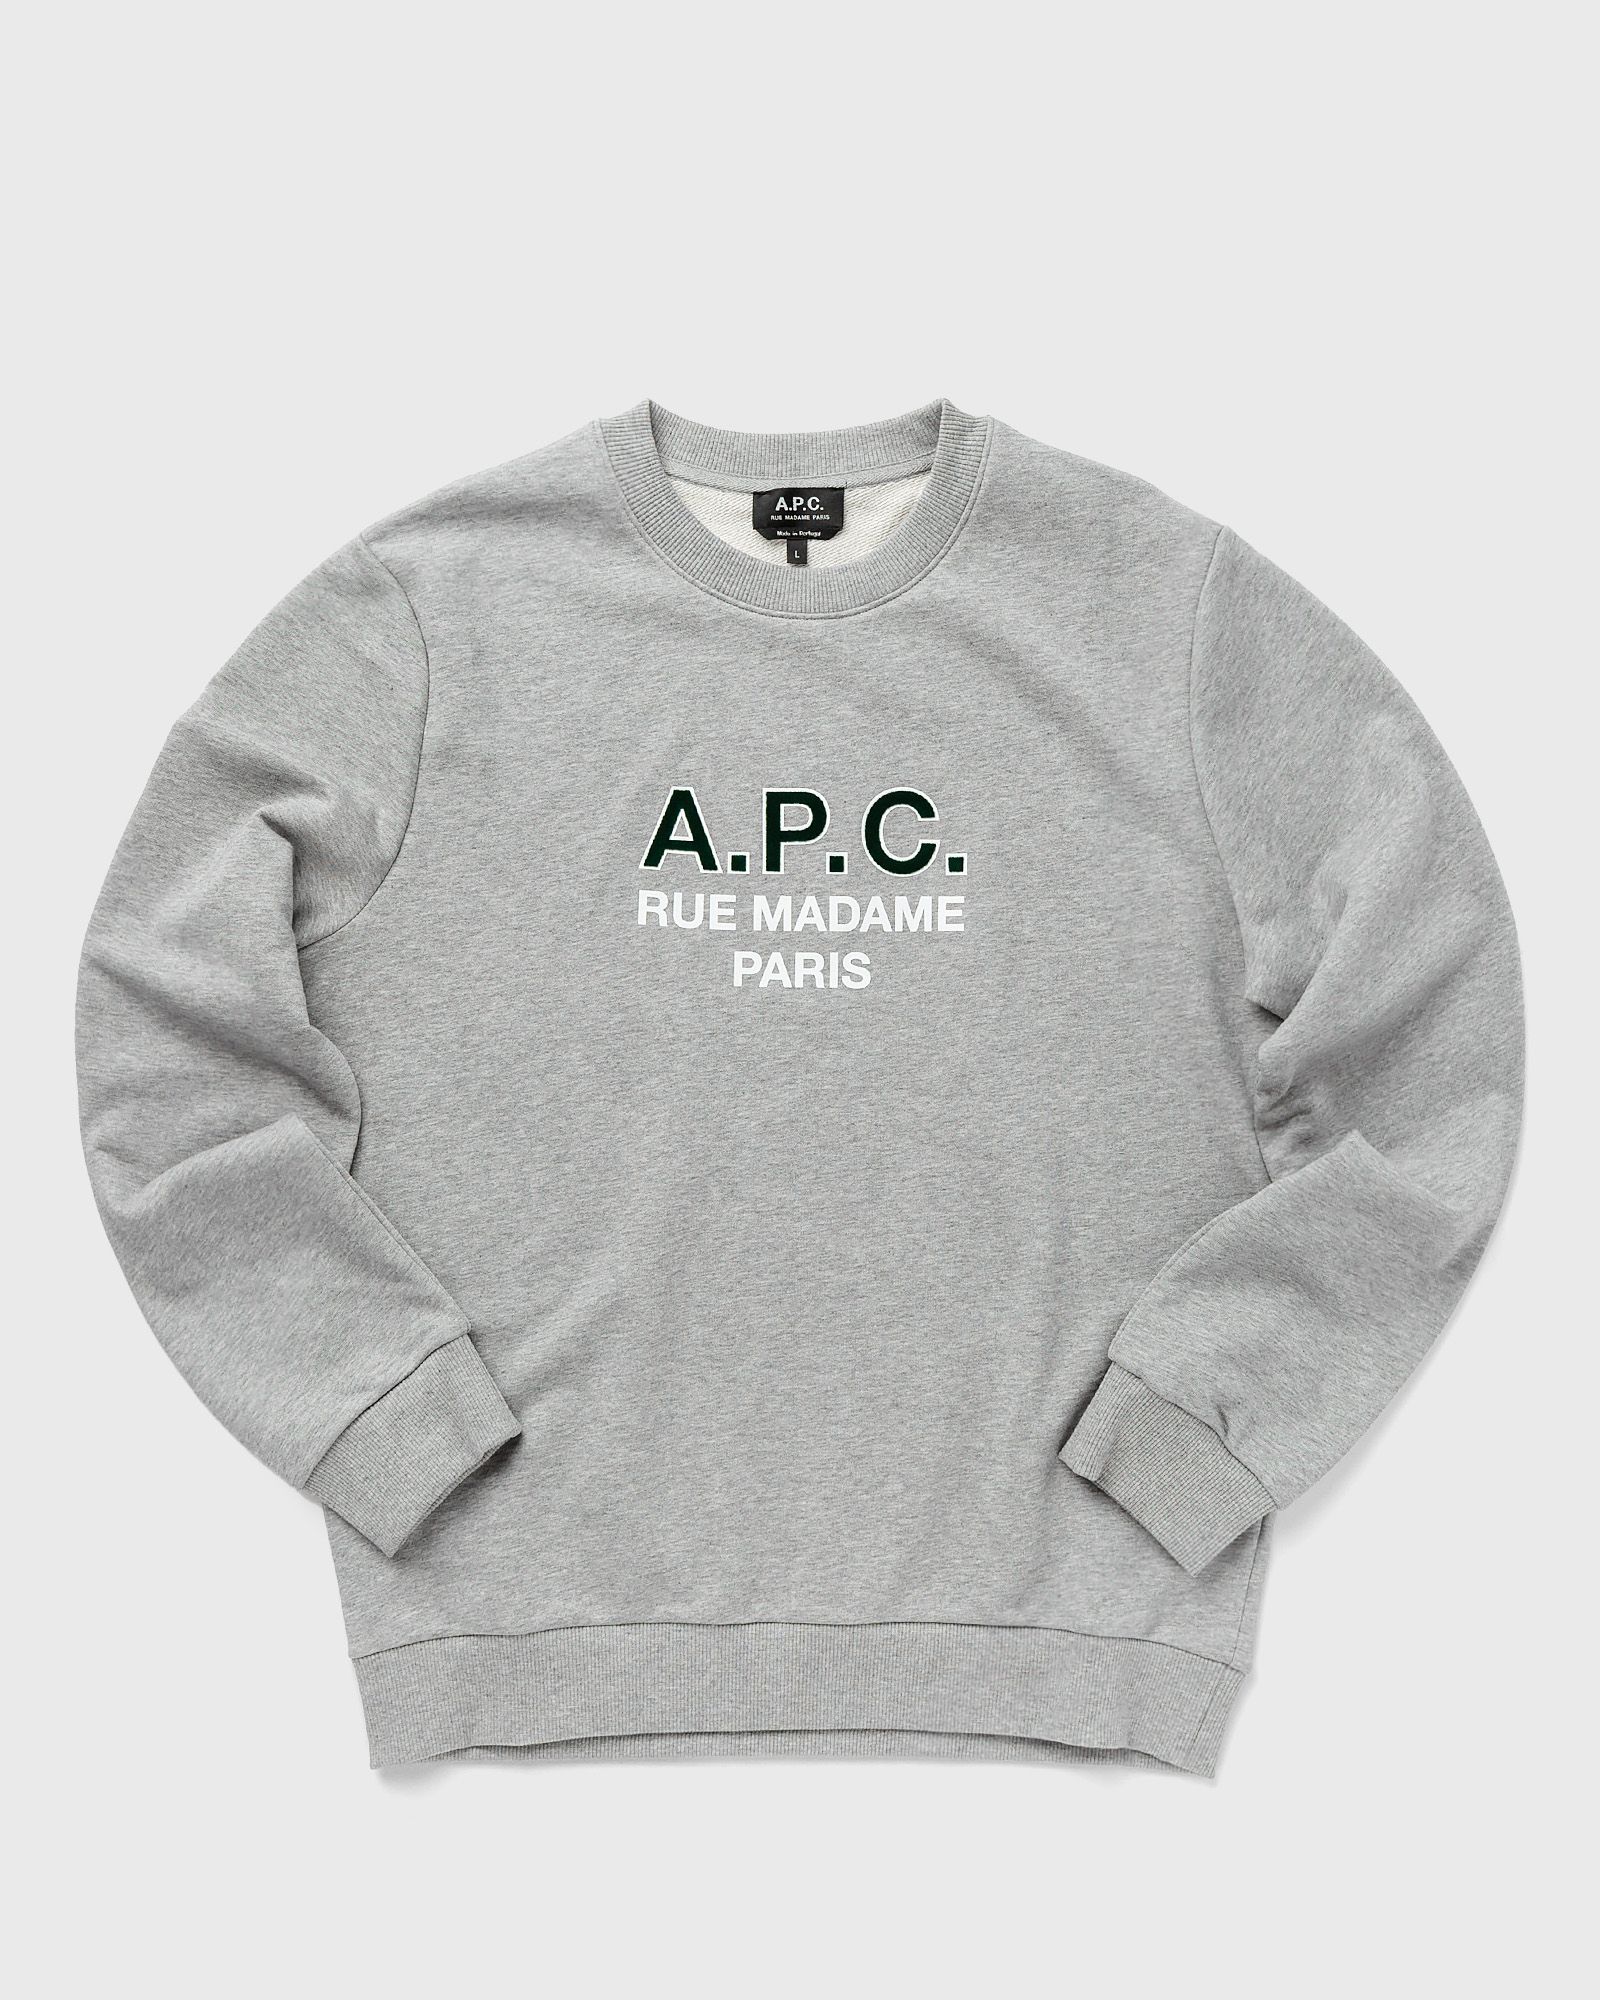 A.P.C. - sweat apc madame h men sweatshirts grey in größe:xl